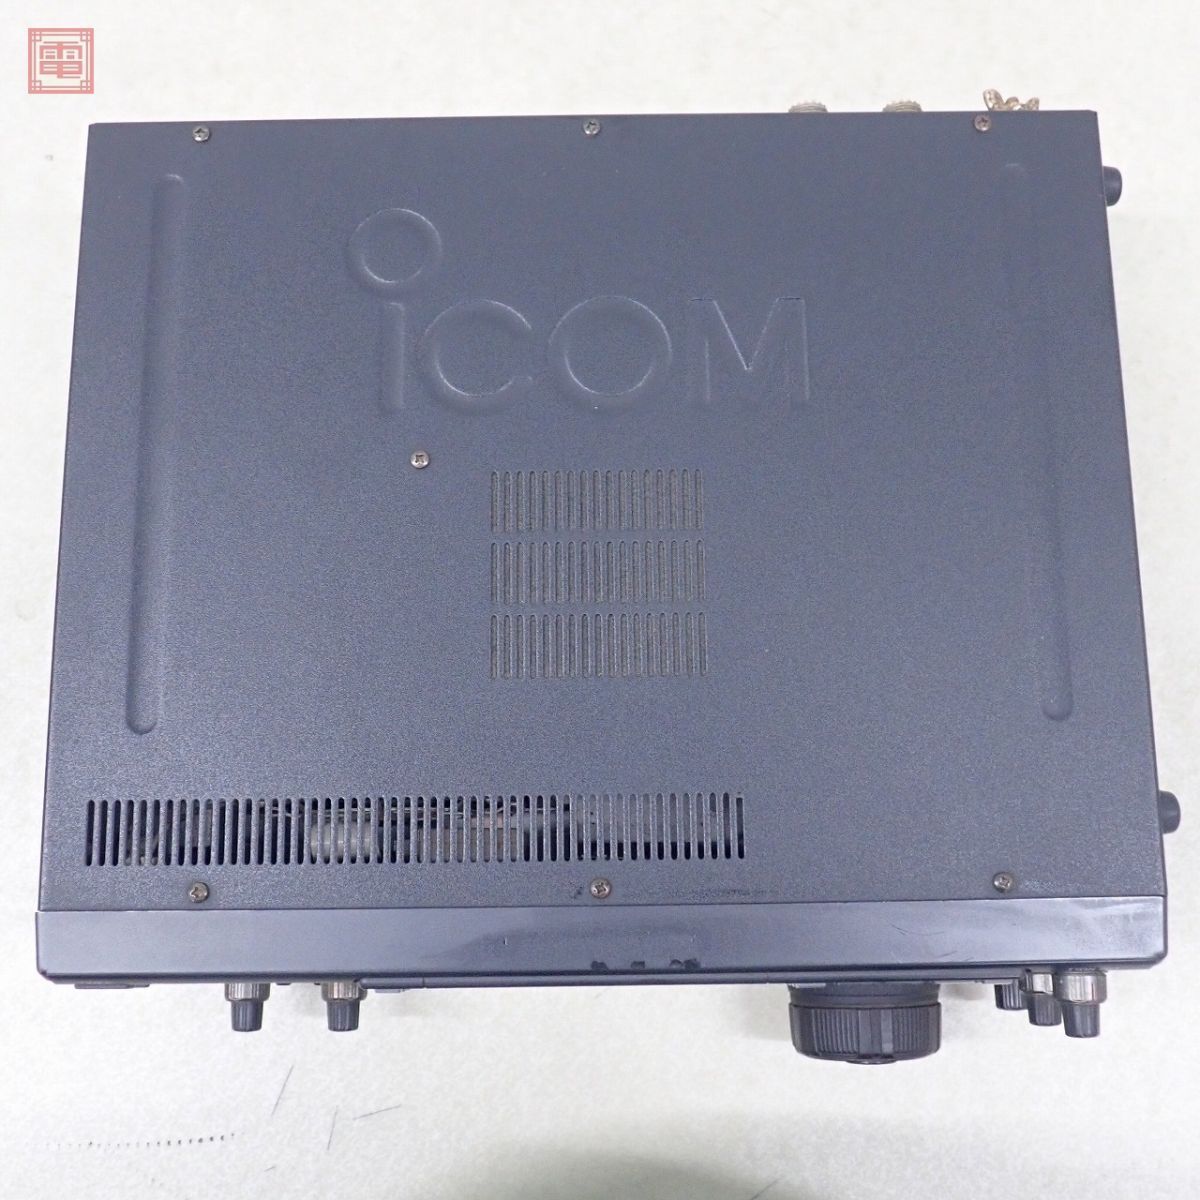 1 иен ~ Icom IC-756M HF obi /50MHz 50W встроенный много опций установка settled * с руководством пользователя ICOM[20